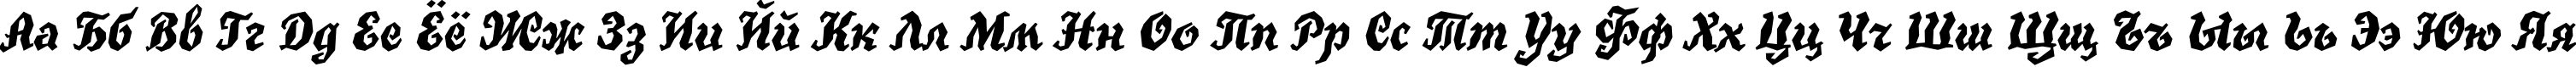 Пример написания русского алфавита шрифтом TrueGritITC